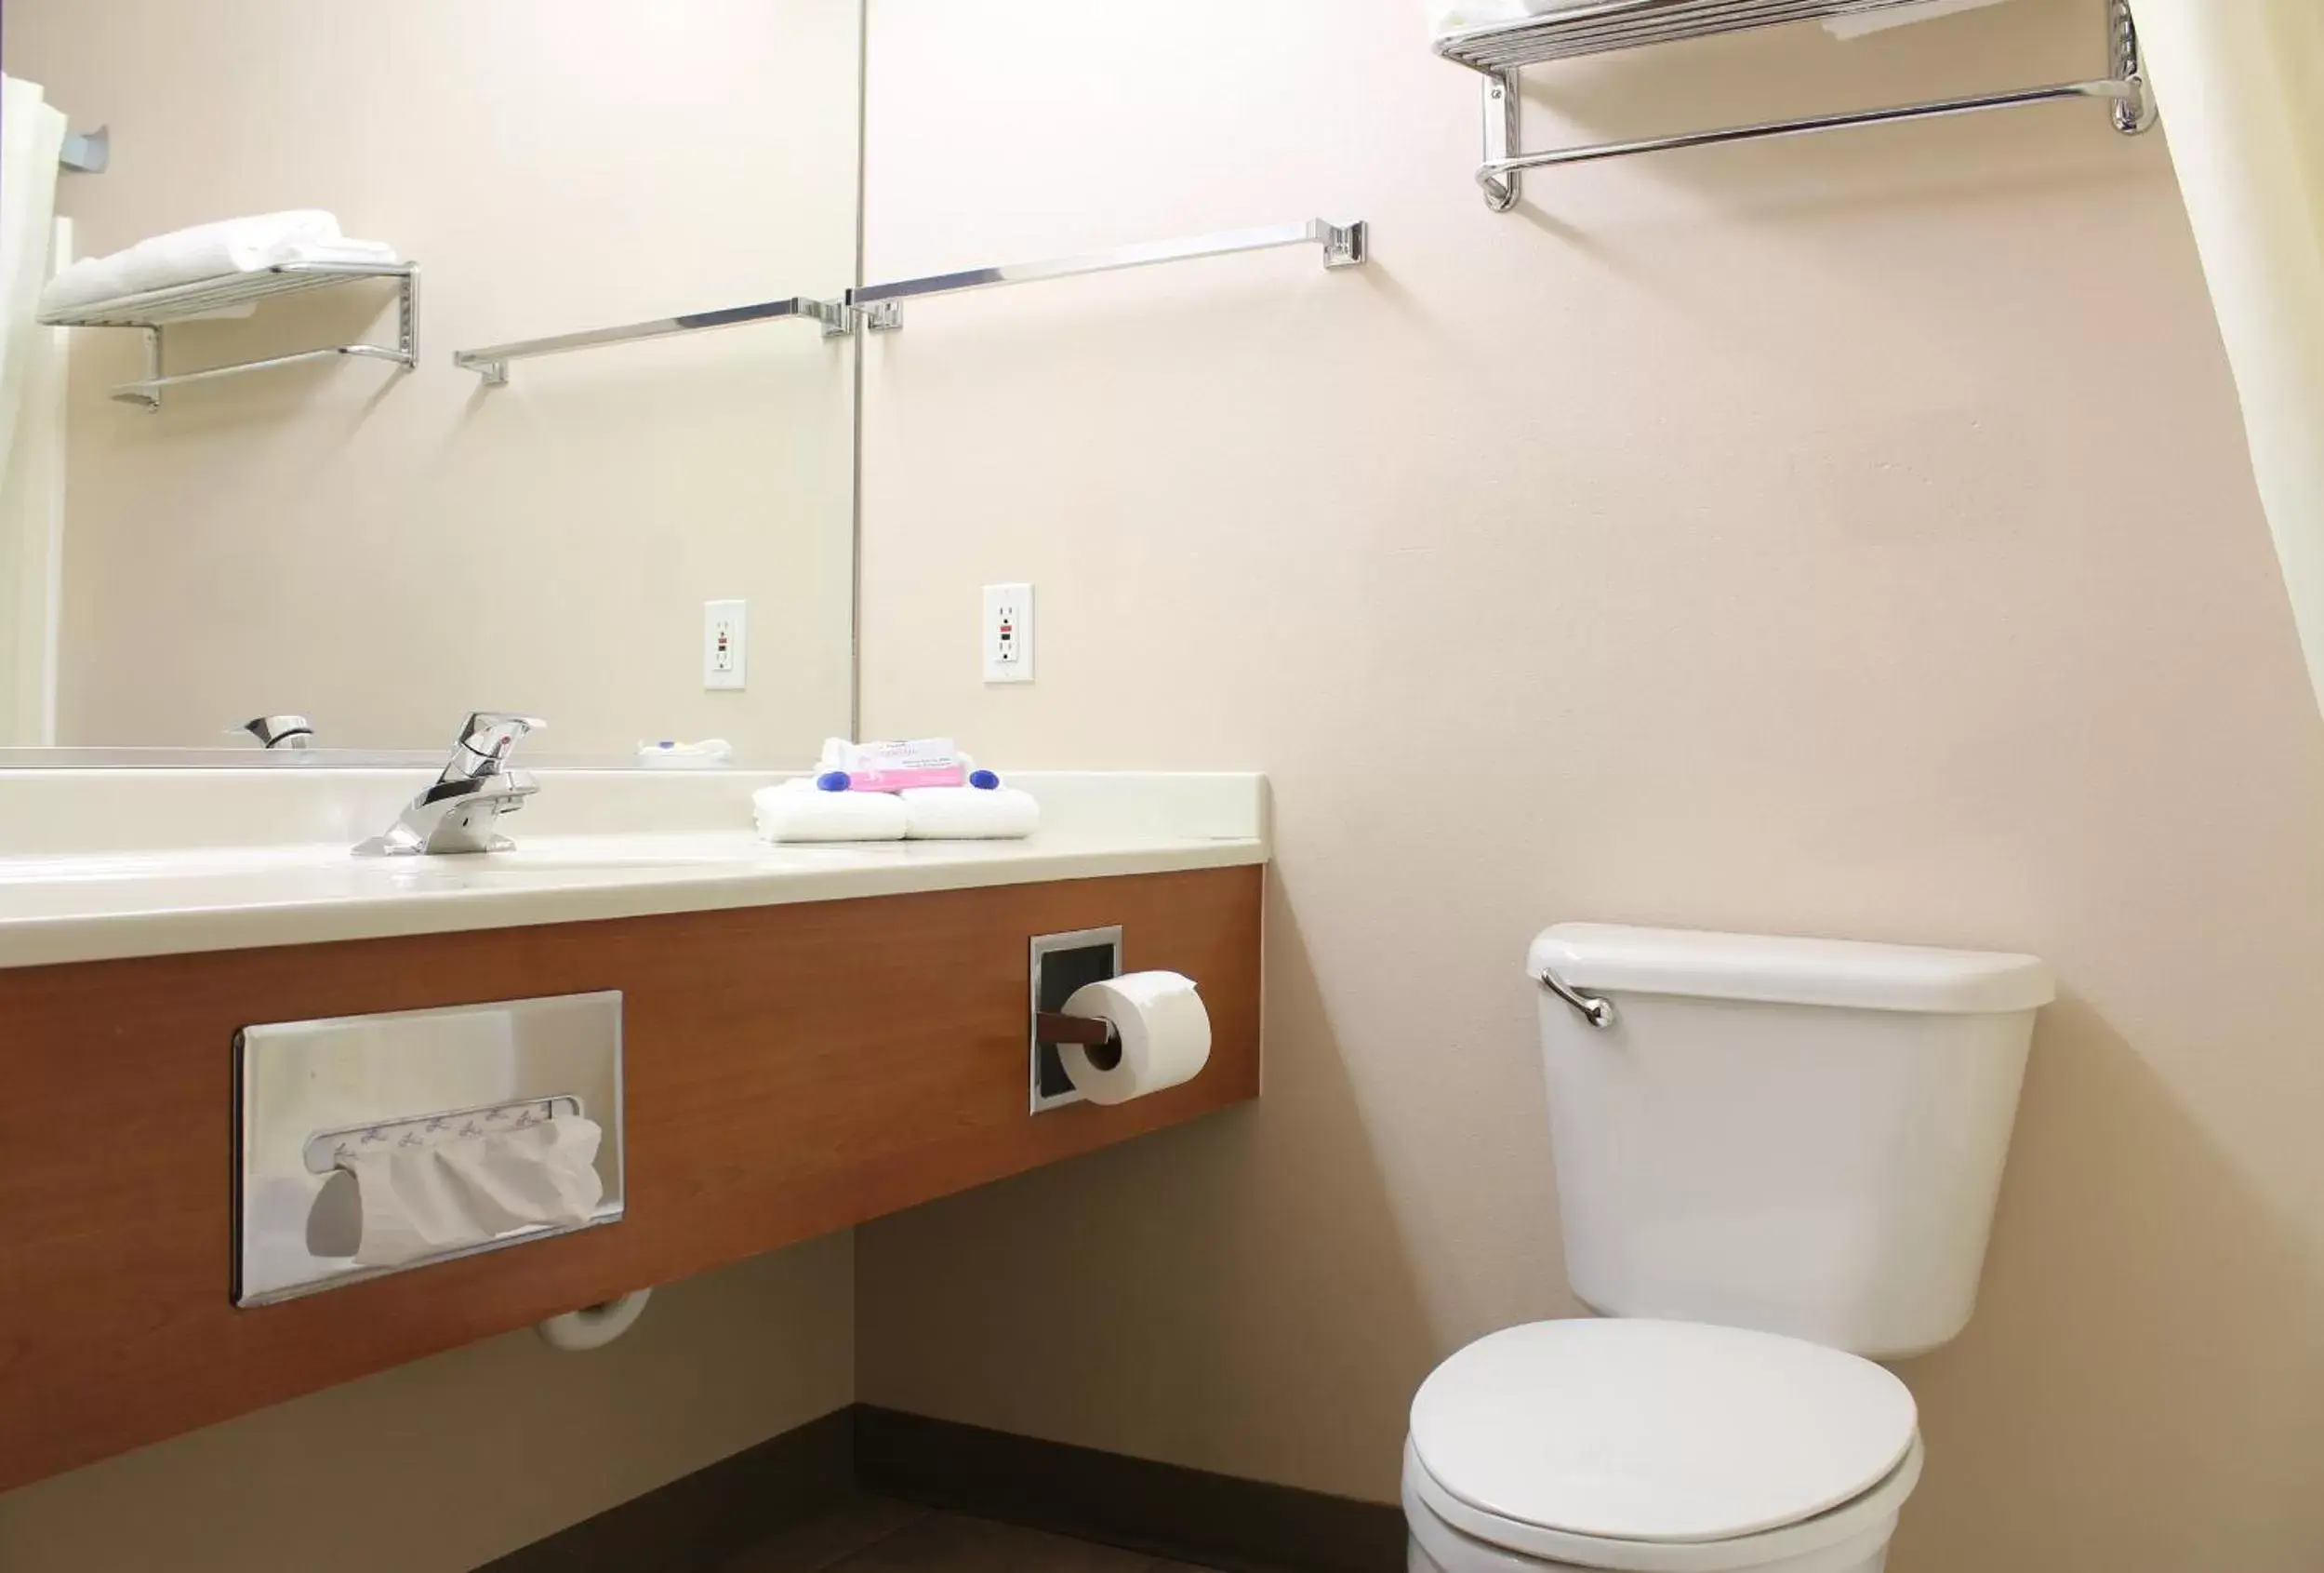 Toilet, Bathroom in Scipio Hotel